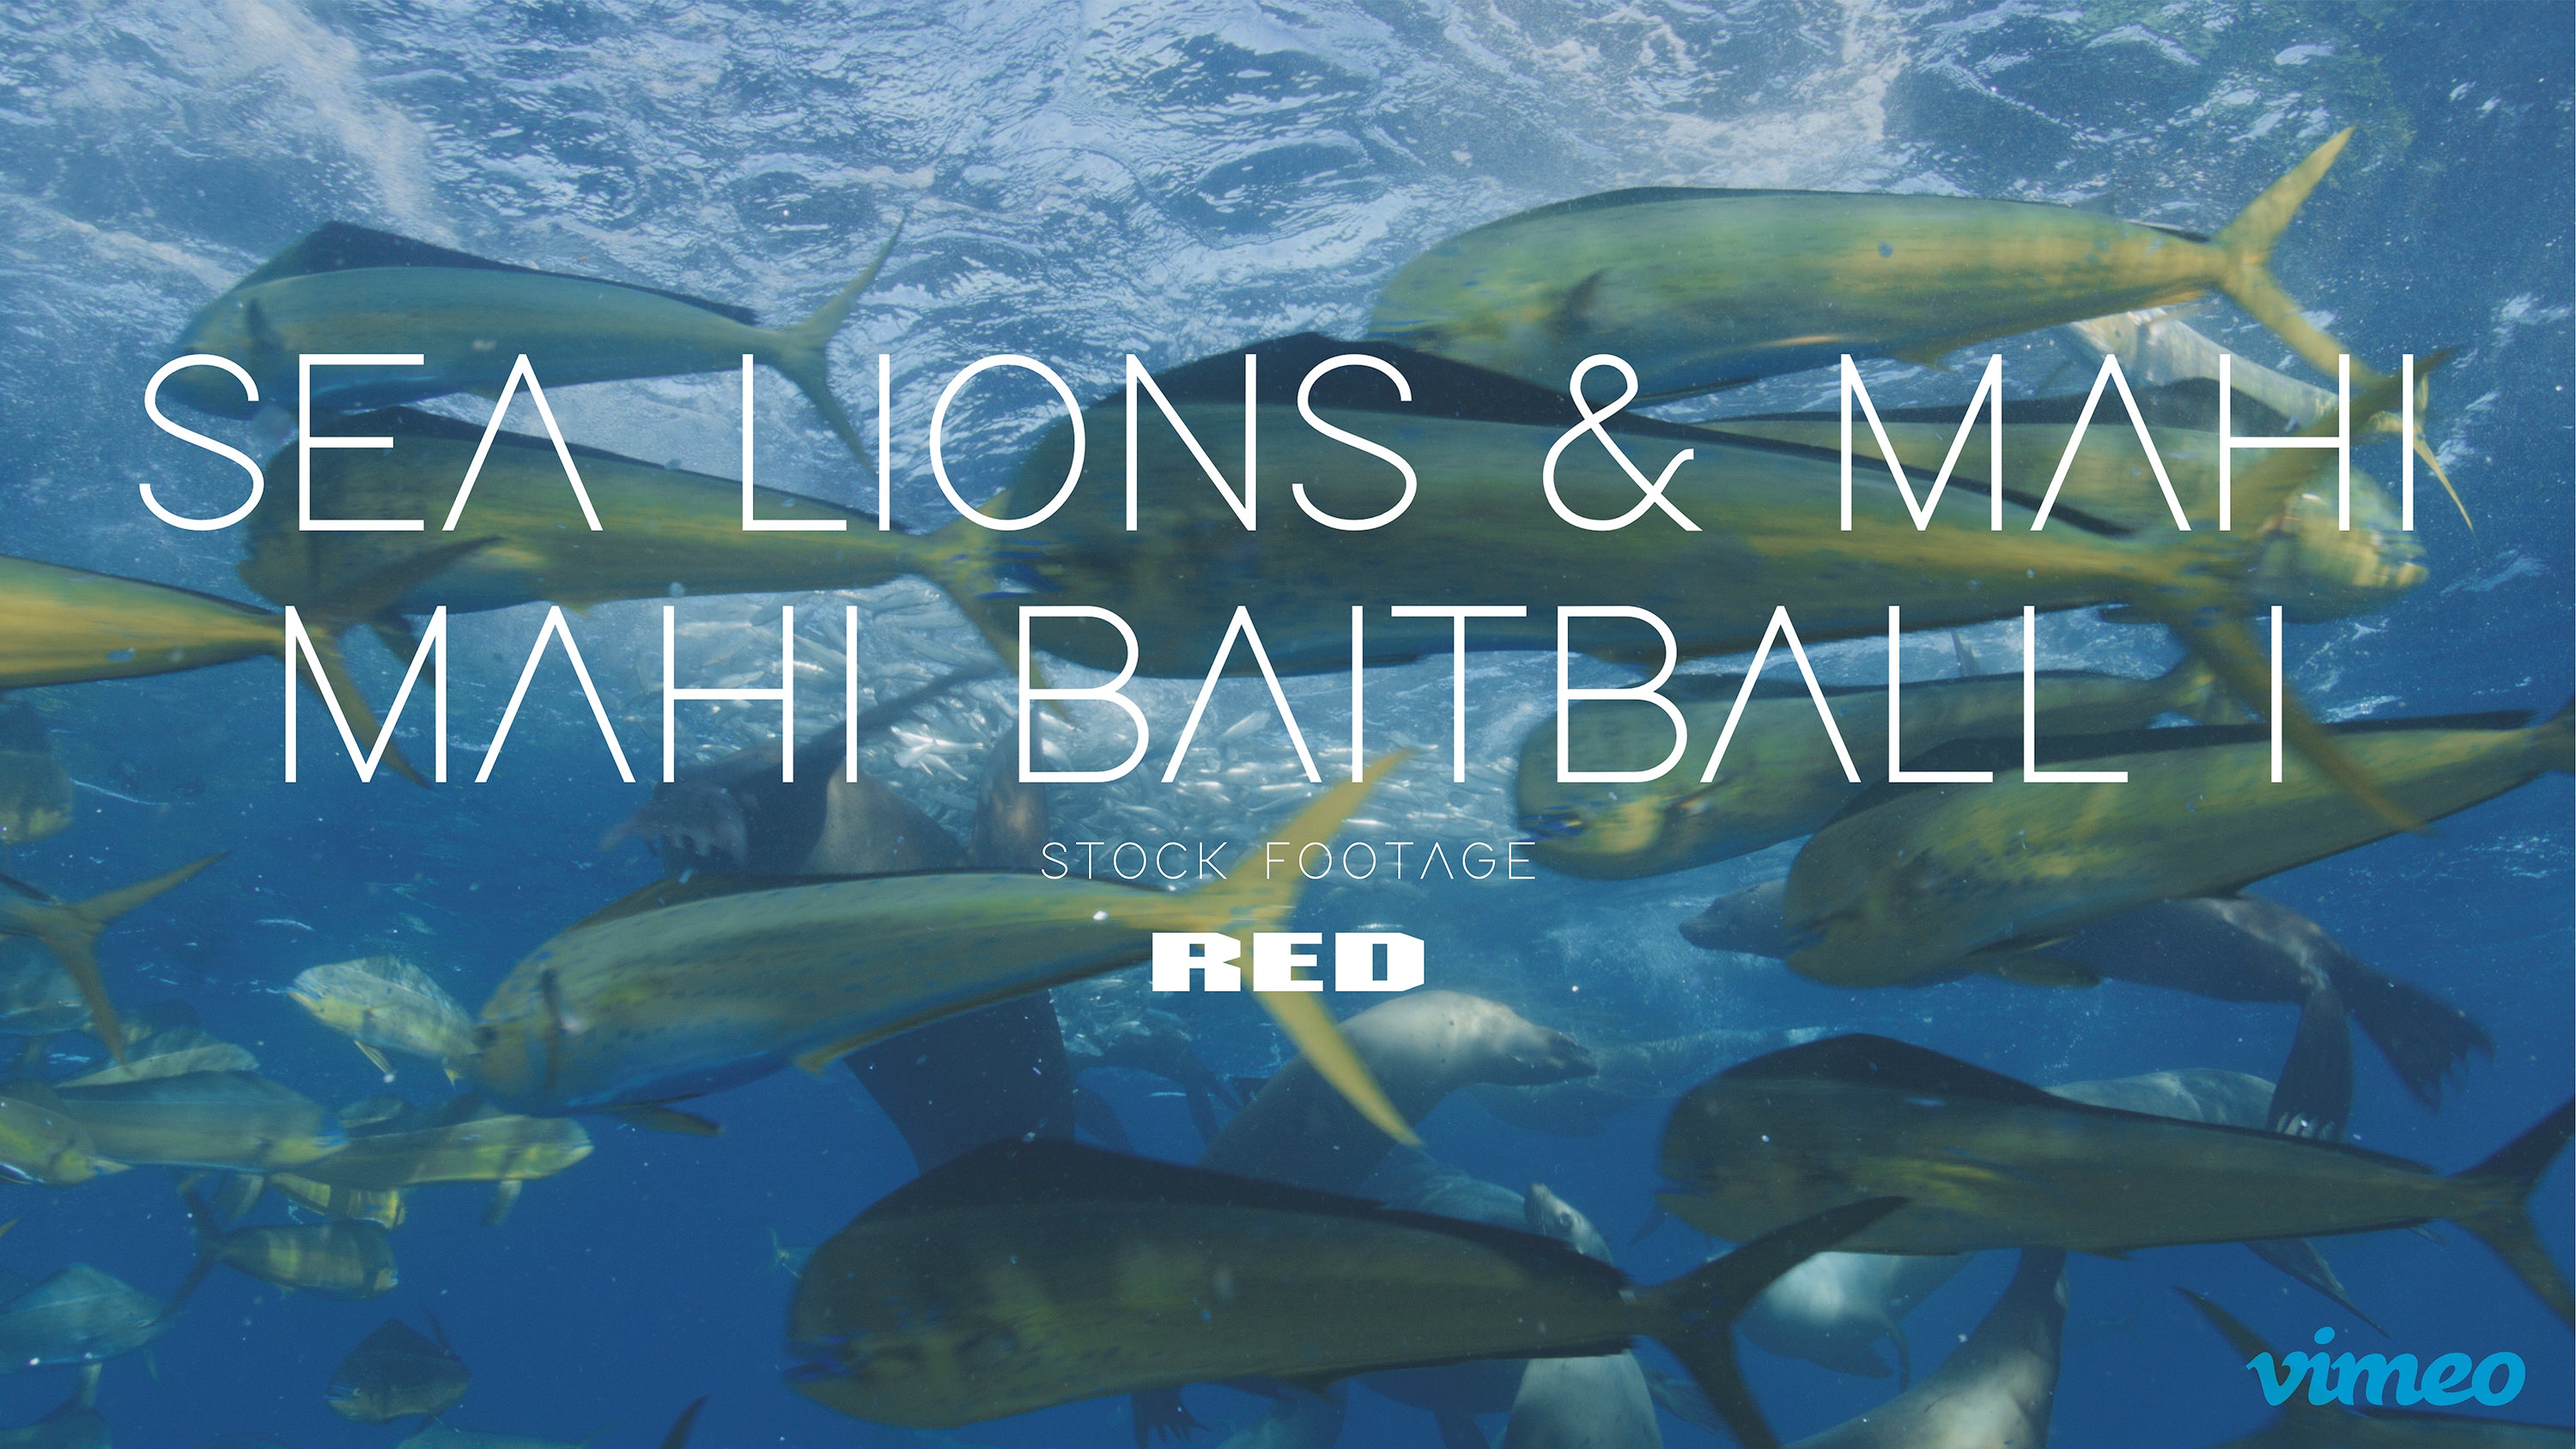 Sea lions & Mahi mahi baitball I